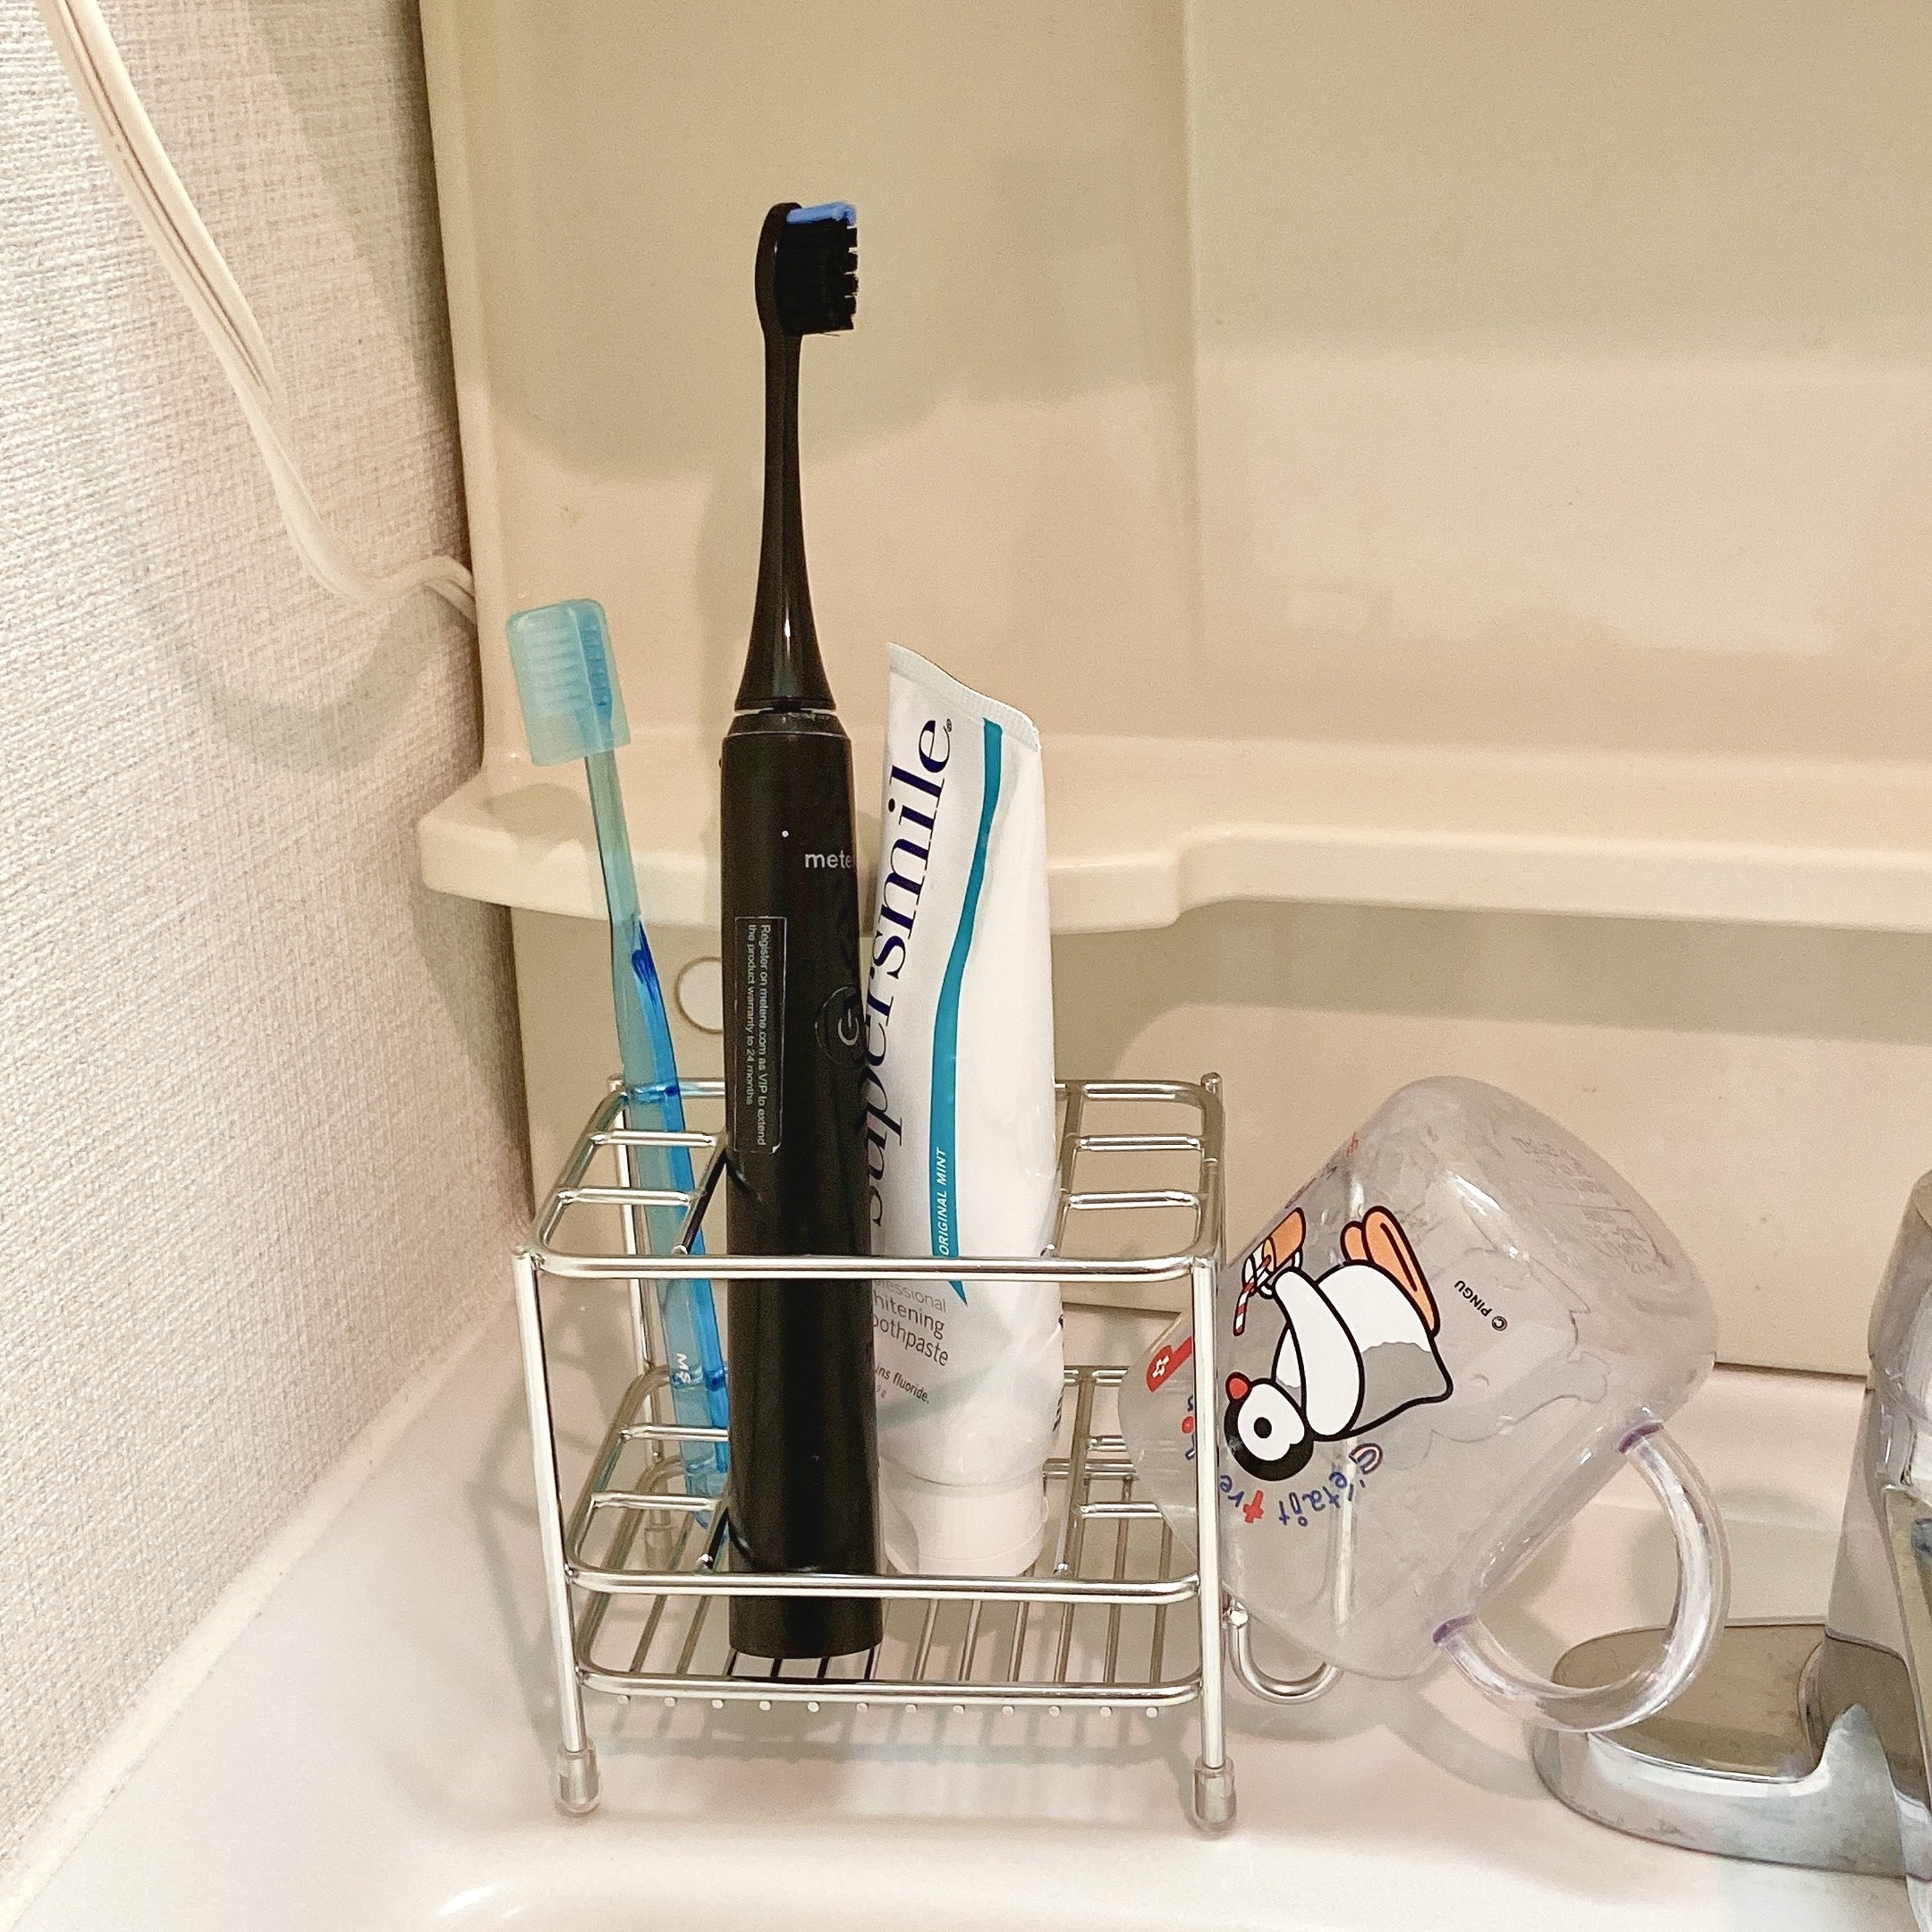 洗面所の掃除が楽になった ニトリの 歯ブラシスタンド はまとめて収納できるんです